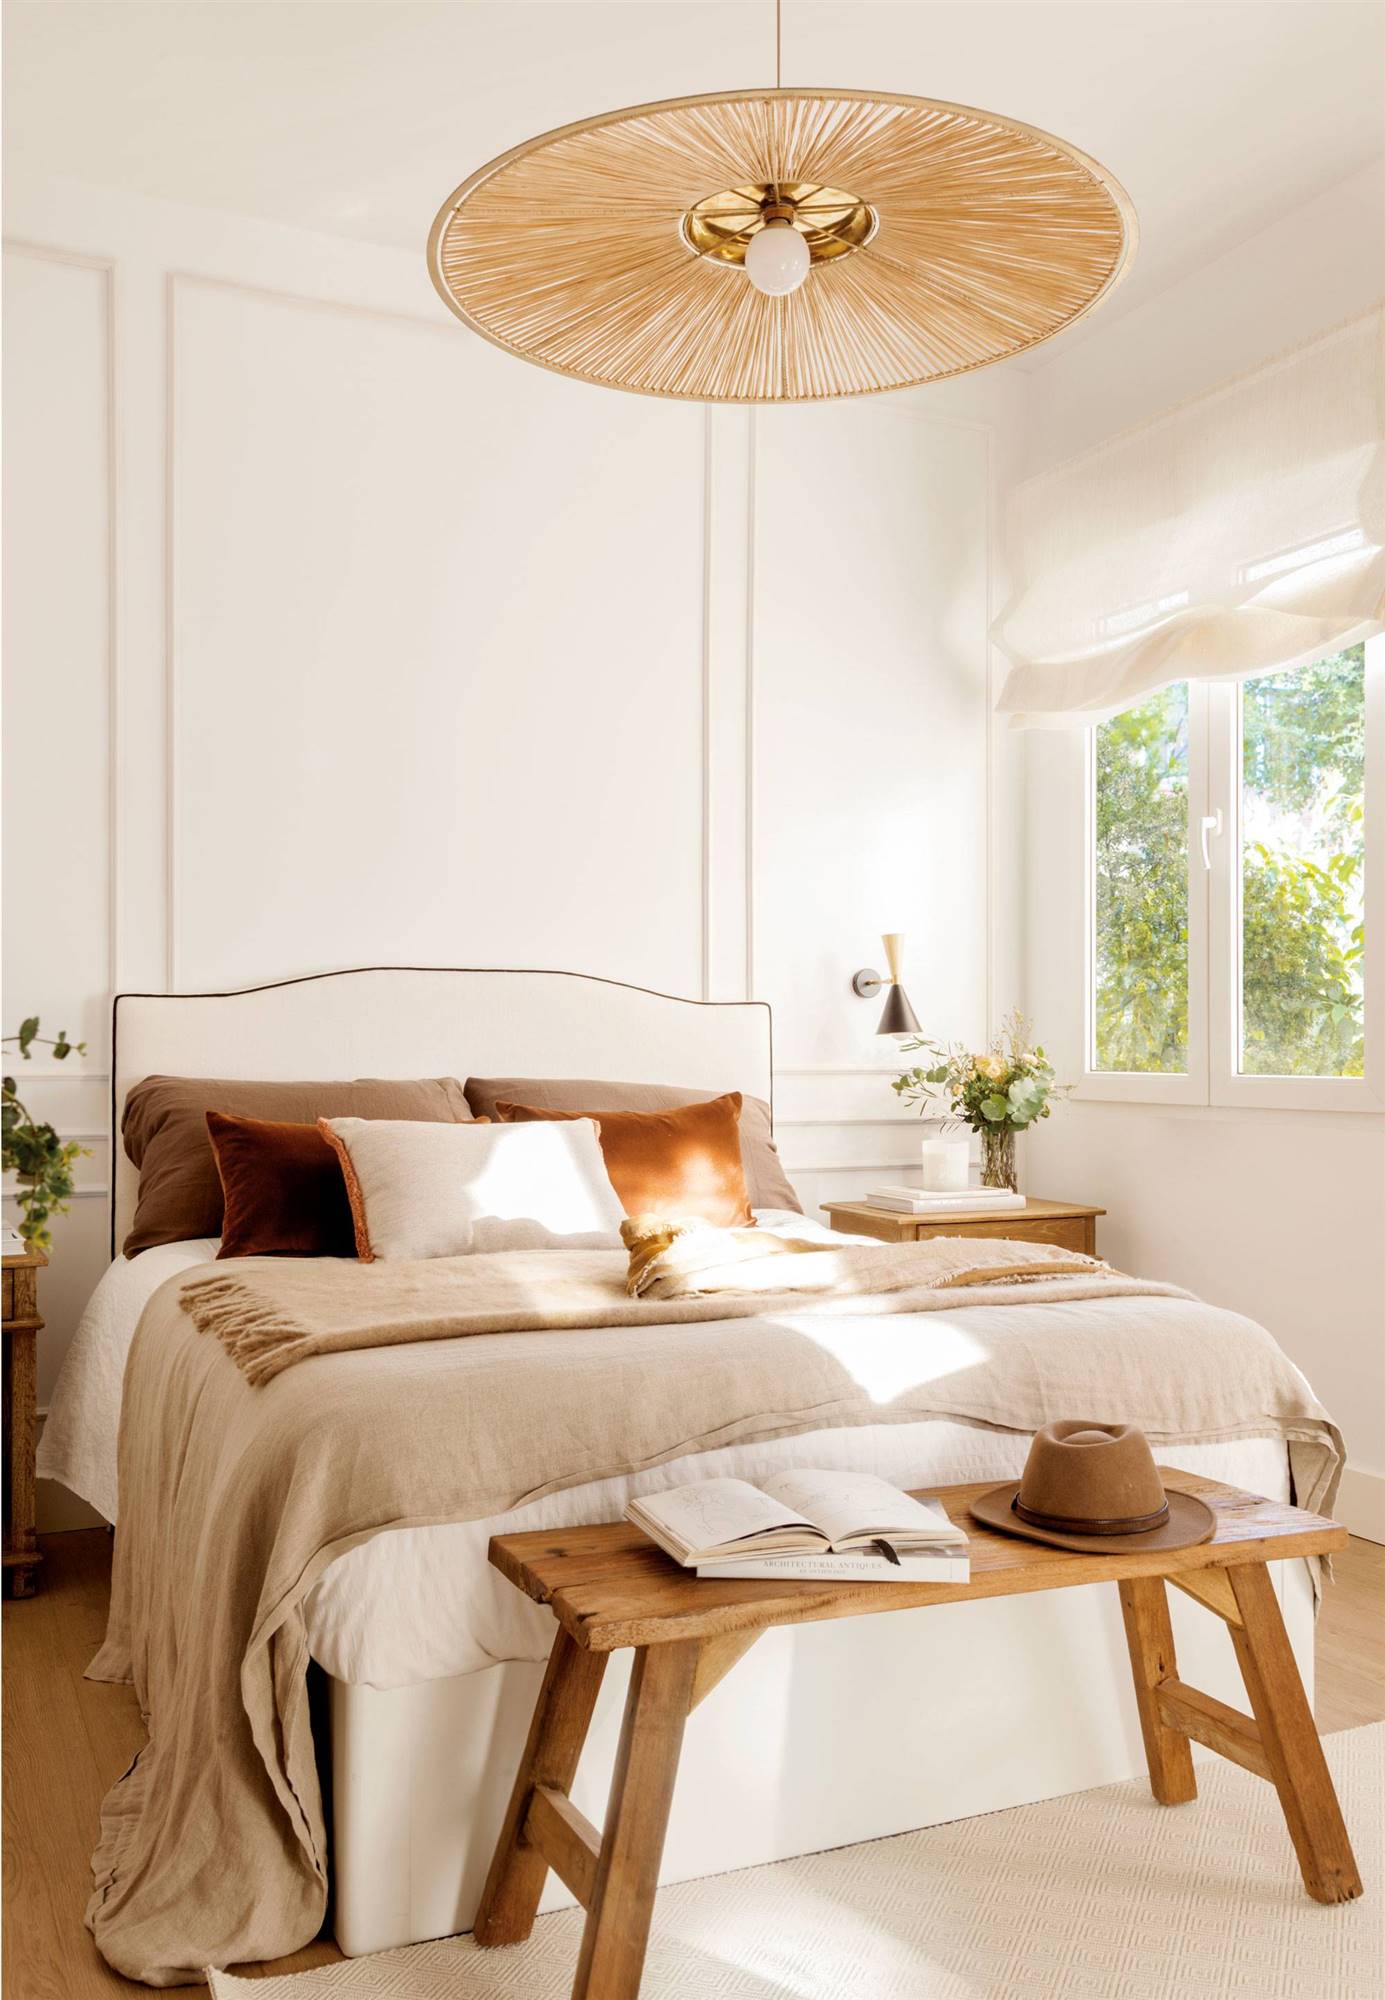 Dormitorio decorado en blanco y madera.